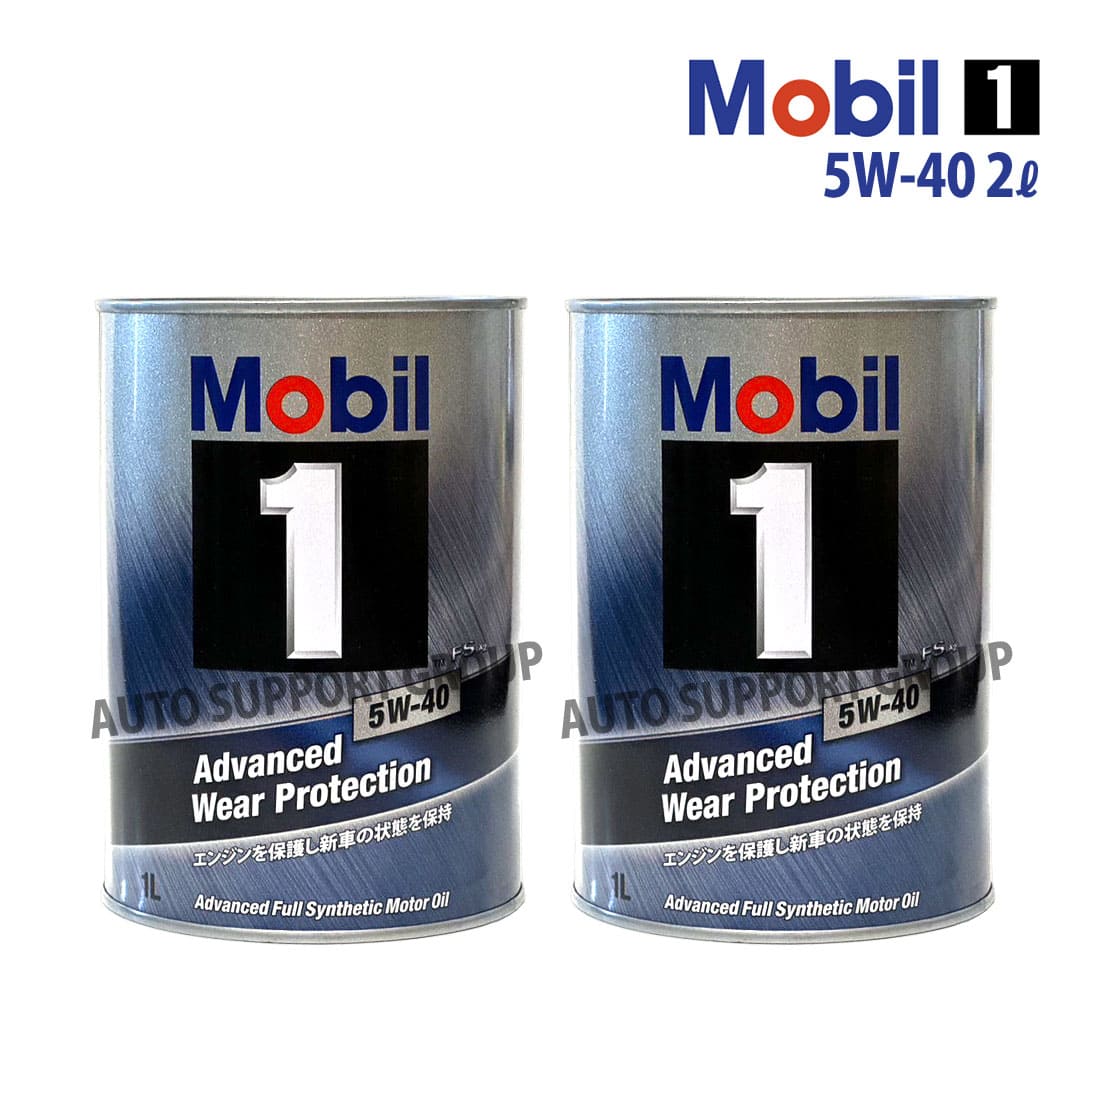 エンジンオイル 5W-40 FS X2 モービル1 Mobil1 1L缶 (1リットル) : ys 